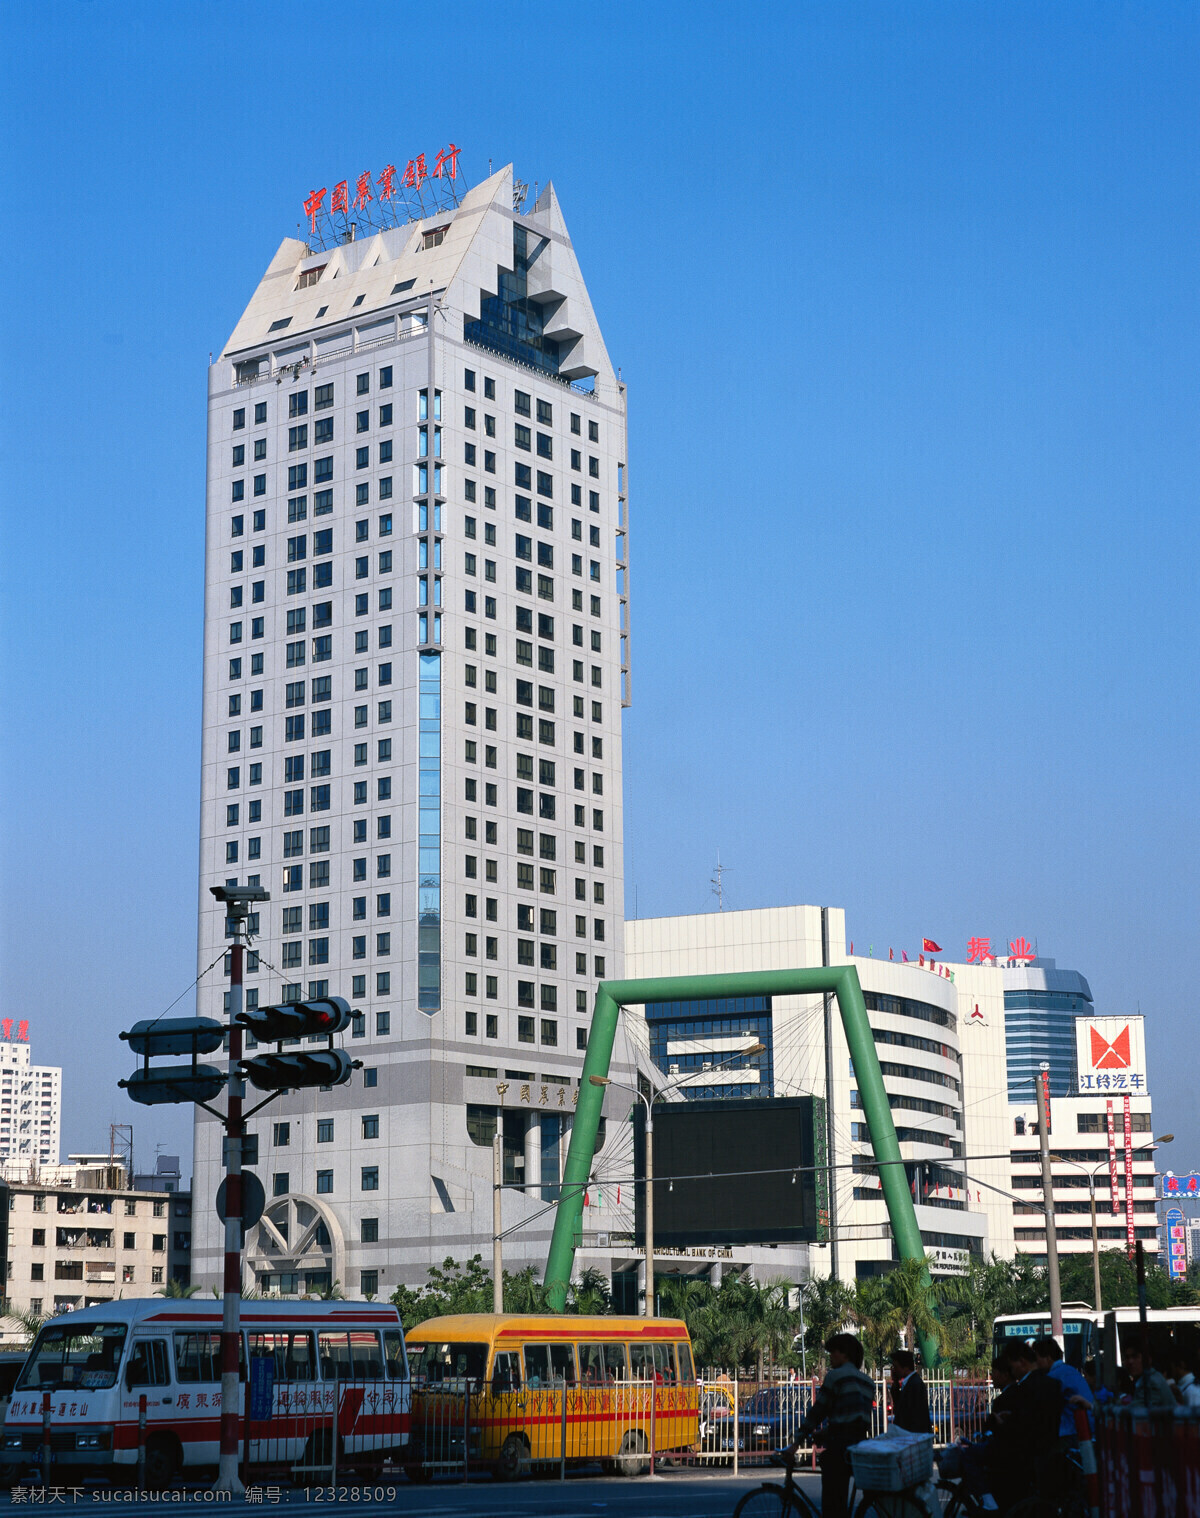 中国农业银行 大厦 城市风景 公路 绿化 植物 建筑物 建筑 天空 蓝天 风景摄影 城市摄像 高楼大厦 城市风光 环境家居